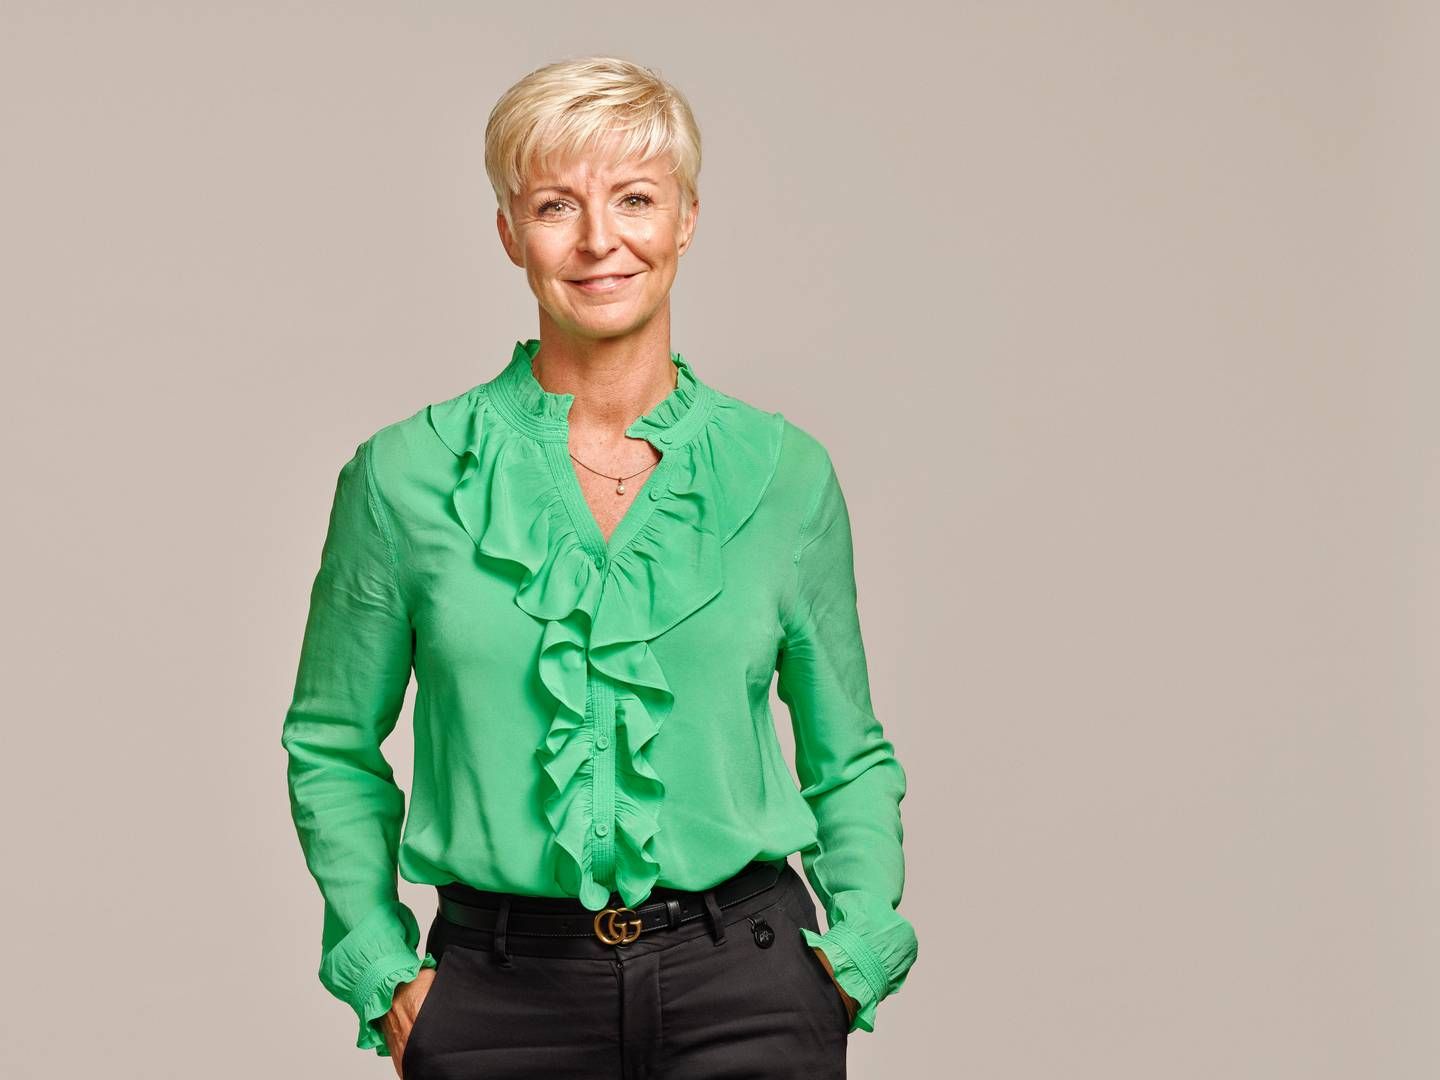 Janne Bjaaland blev i foråret 2022 HR-direktør i Velliv. Tidligere har hun bl.a. arbejdet med kundeservice og salg. | Photo: Pr / Velliv